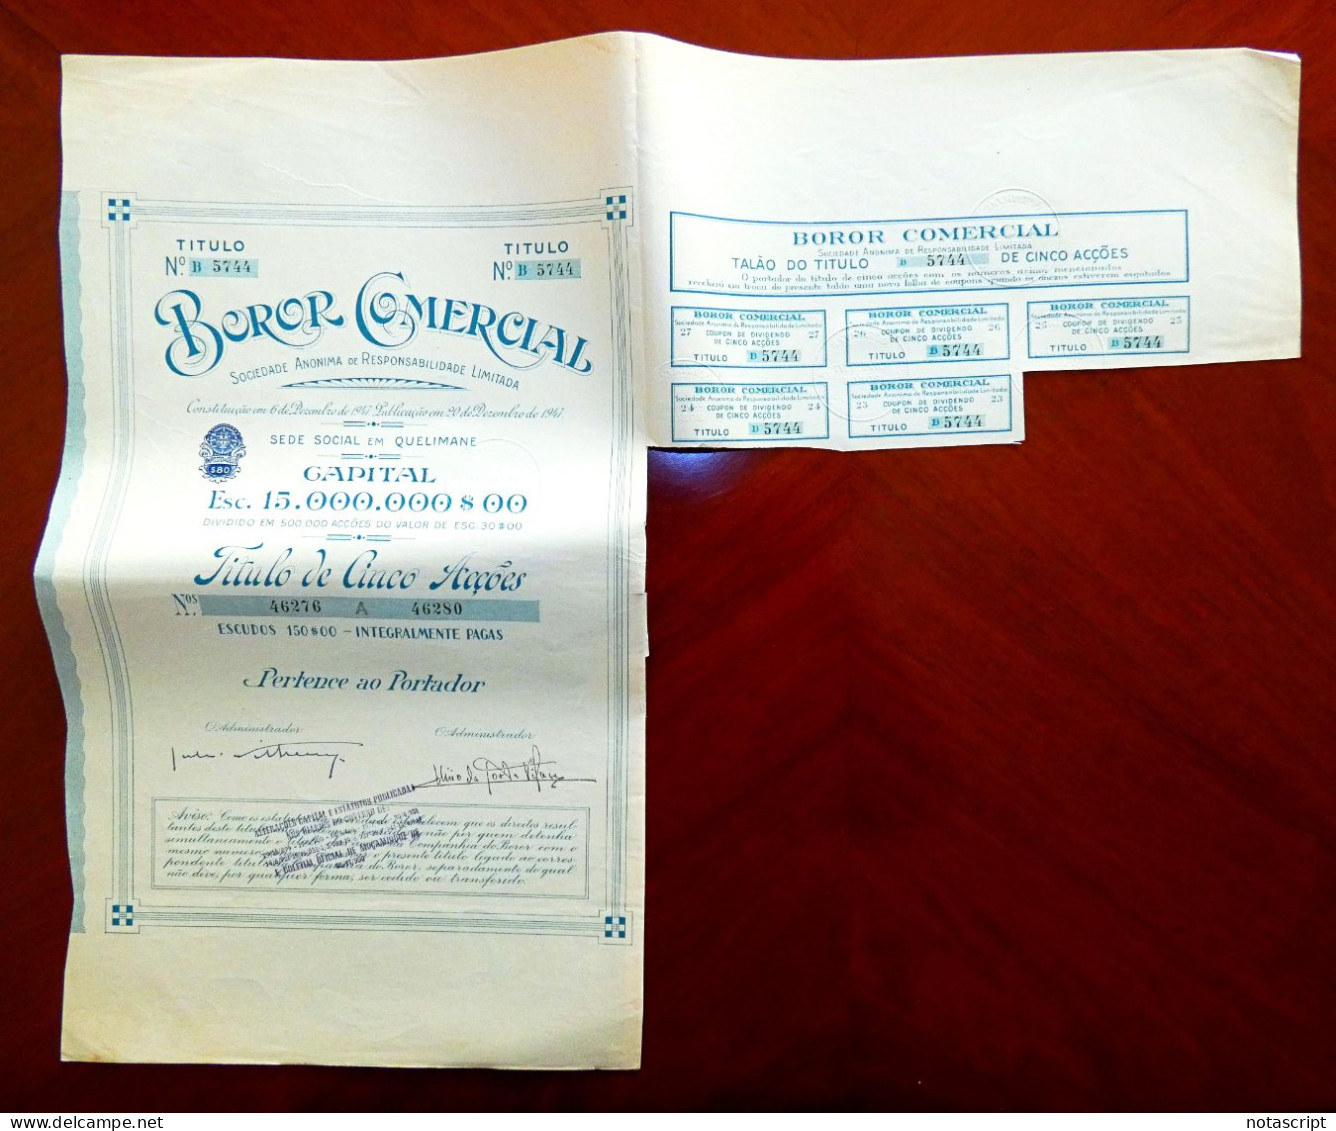 BOROR COMERCIAL SA,  Quelimane (Portuguese Moçambique)  1947 Share Certificate - Afrika